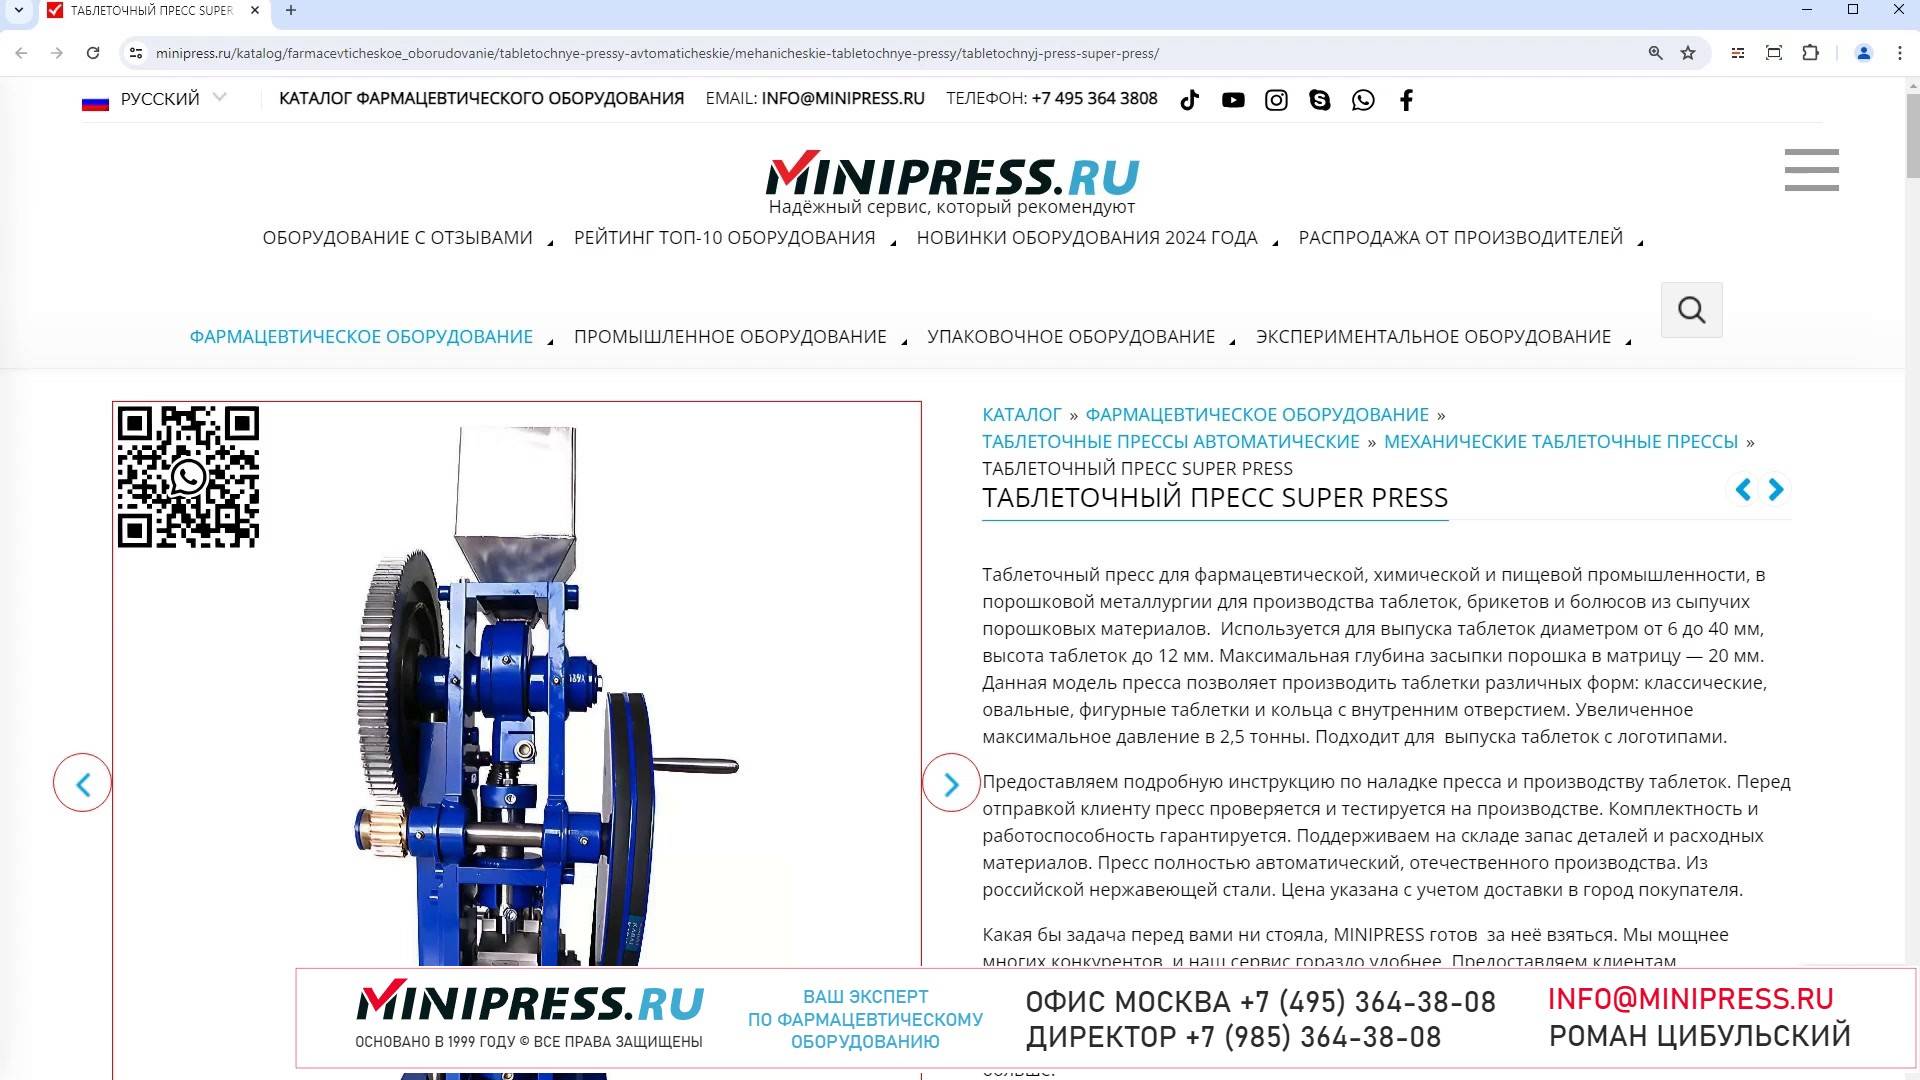 Minipress.ru Таблеточный пресс SUPER PRESS